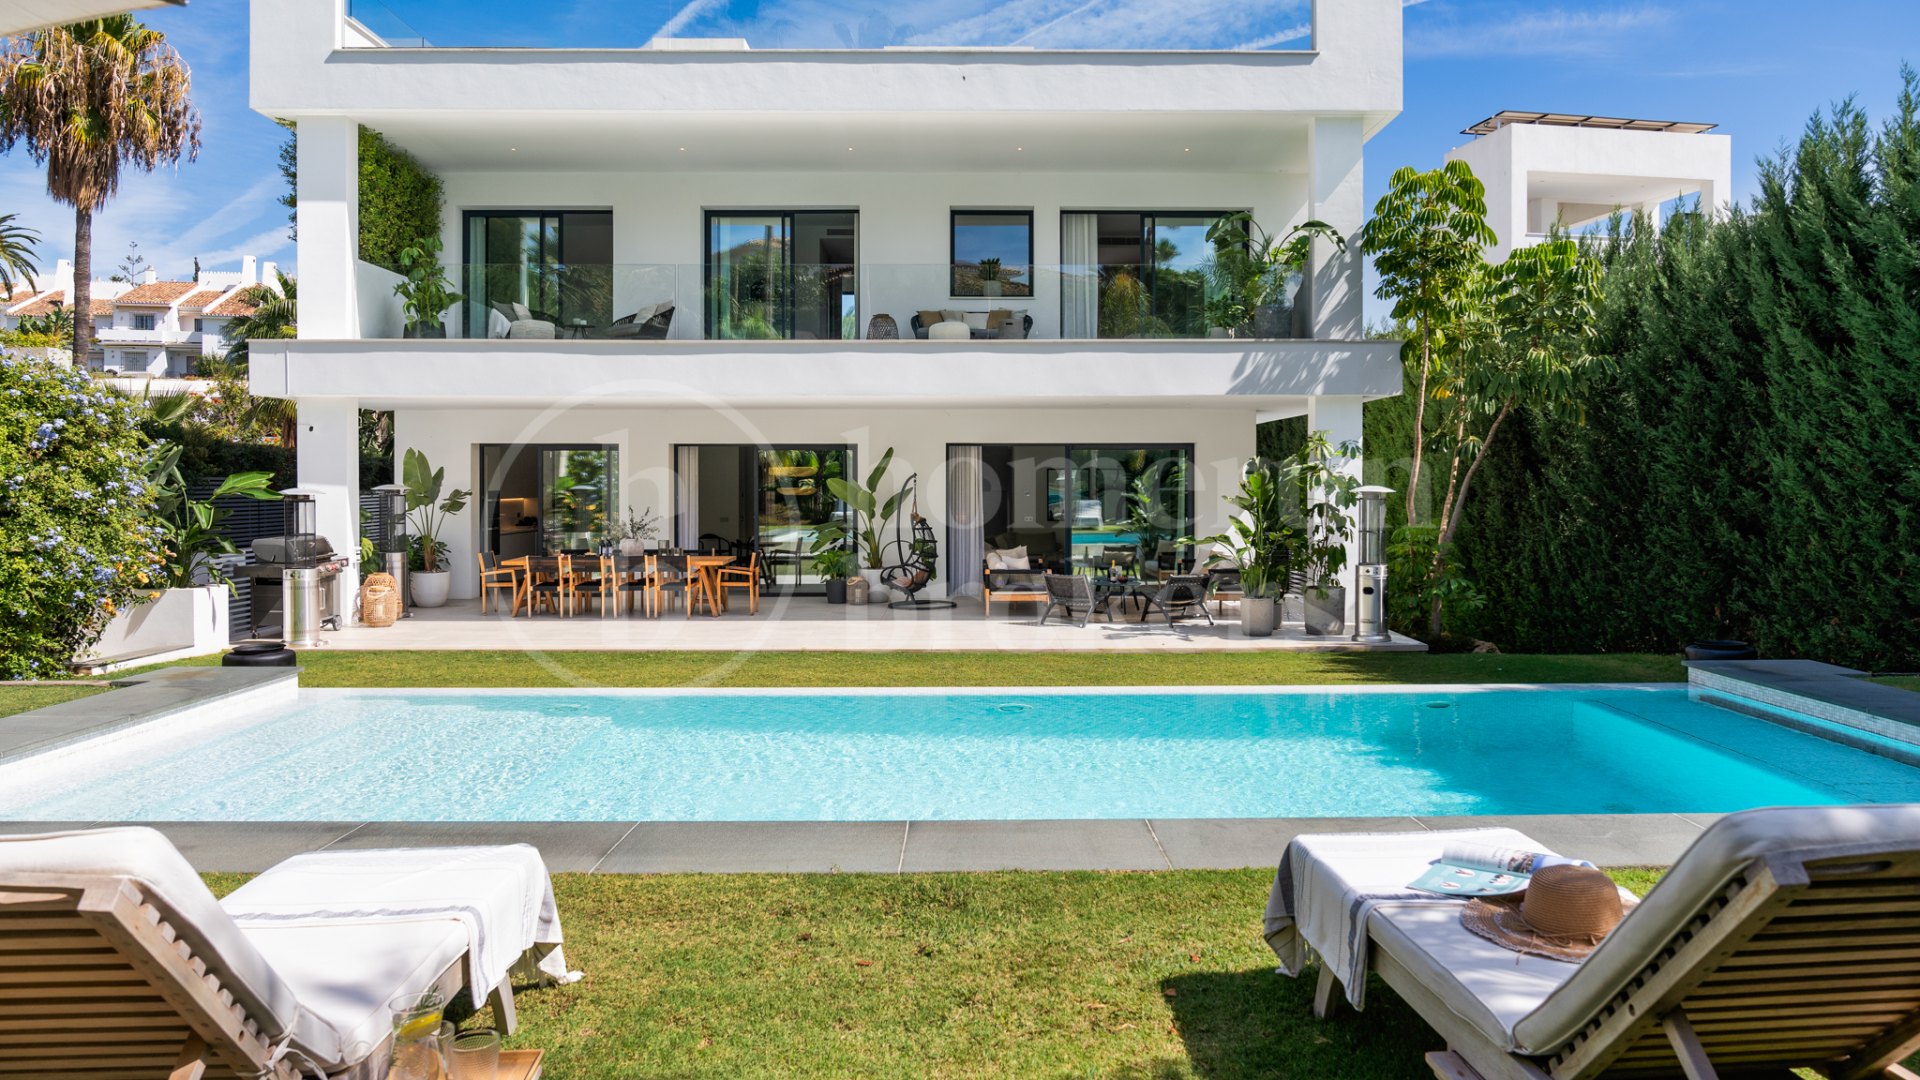 Villa Gardenias - Elegance Meets Convenience in Puerto Banus